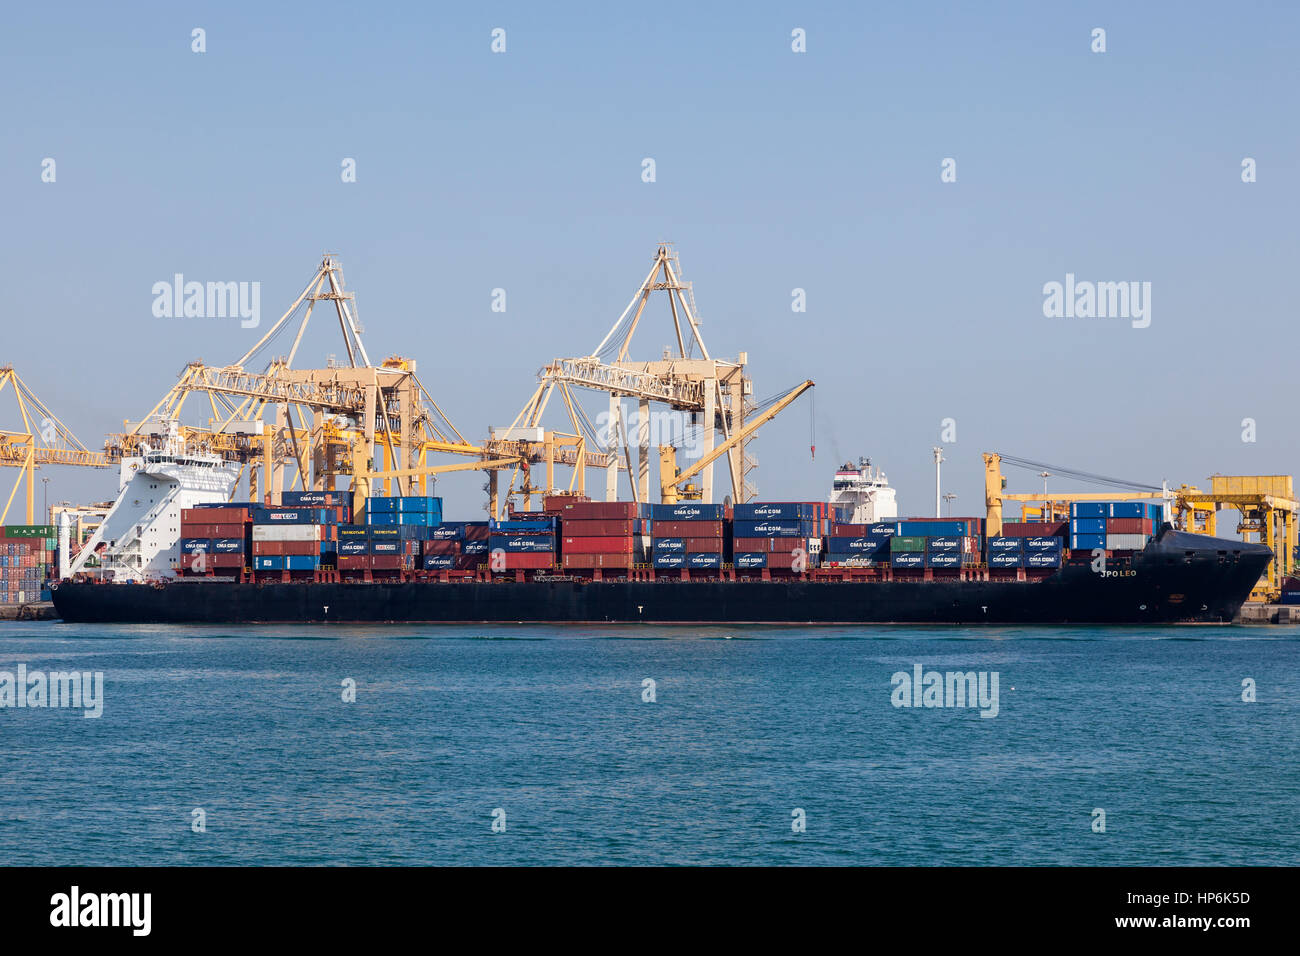 KHOR FAKKAN, Emirati Arabi Uniti - 1 dicembre 2016: Contenitore nave al porto industriale di Khor Fakkan. Emirato di Sharjah Emirati Arabi Uniti Foto Stock